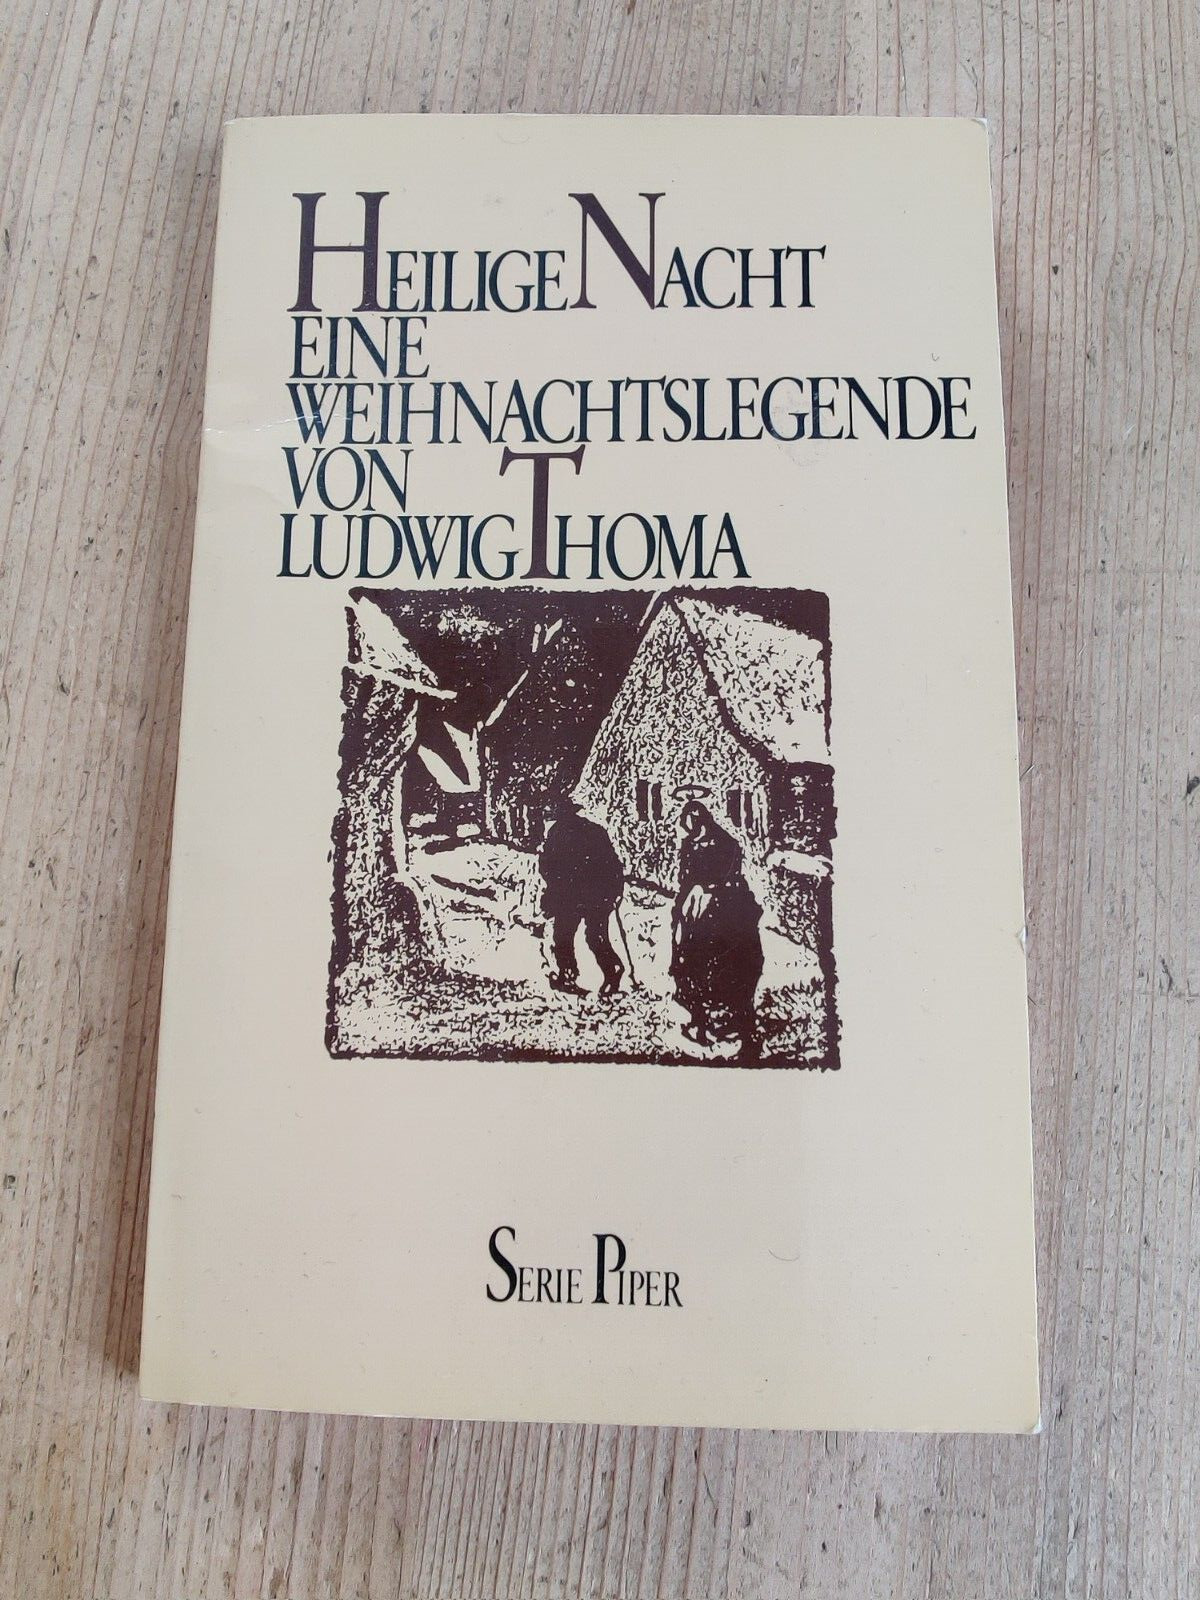 Heilige Nacht - Eine Weihnachtslegende von Ludwig Thoma (1983)